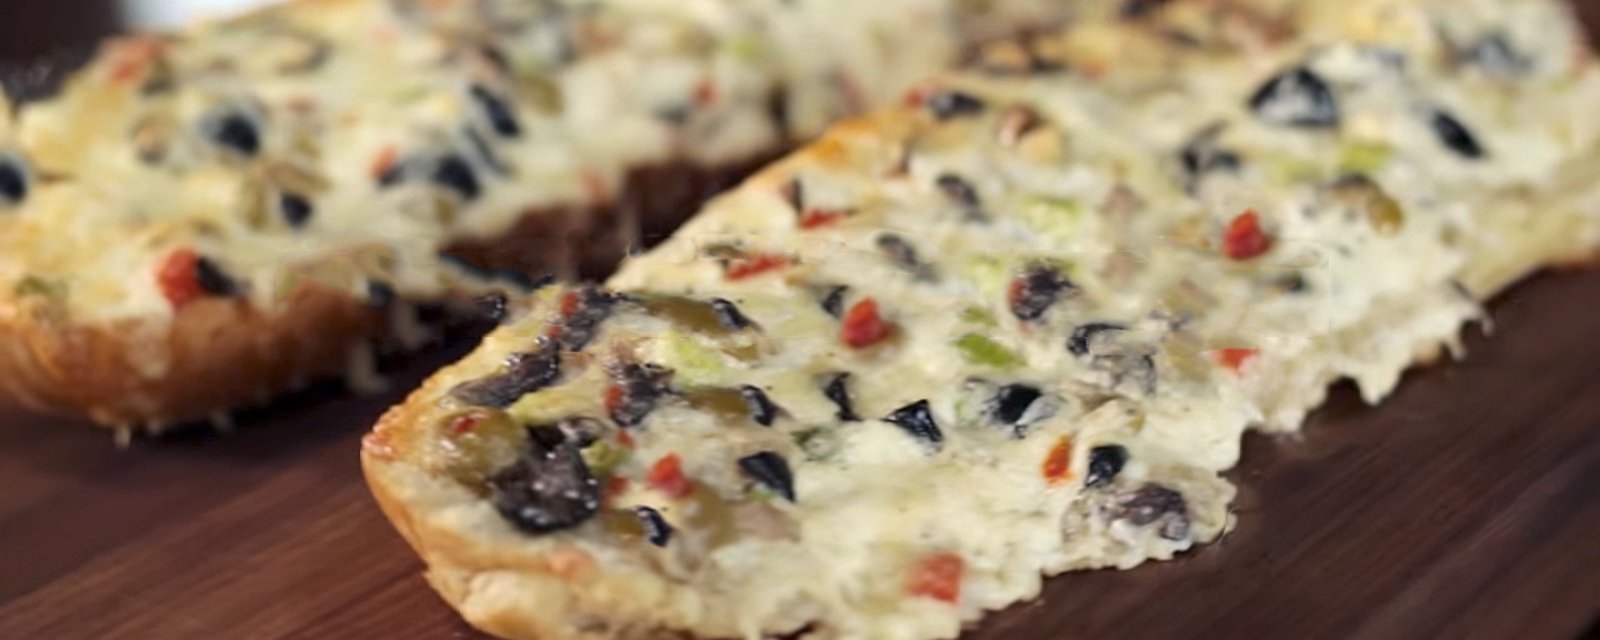 Après avoir pris une bouchée dans ce pain aux olives, vous irez imprimer la recette !